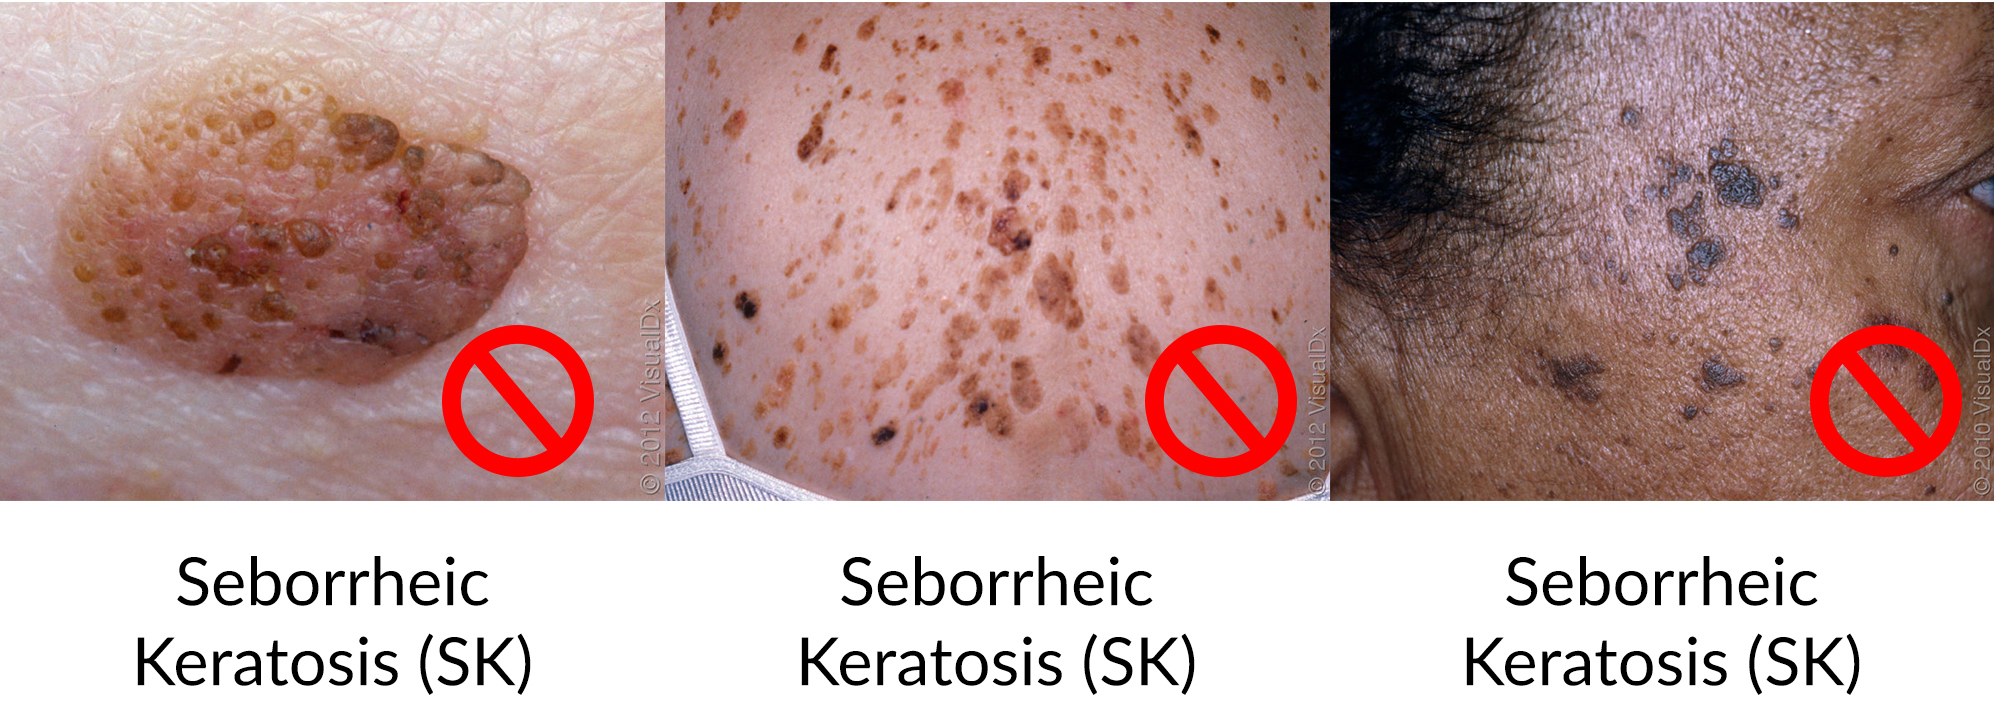 Seborrheic Keratosis (SK)